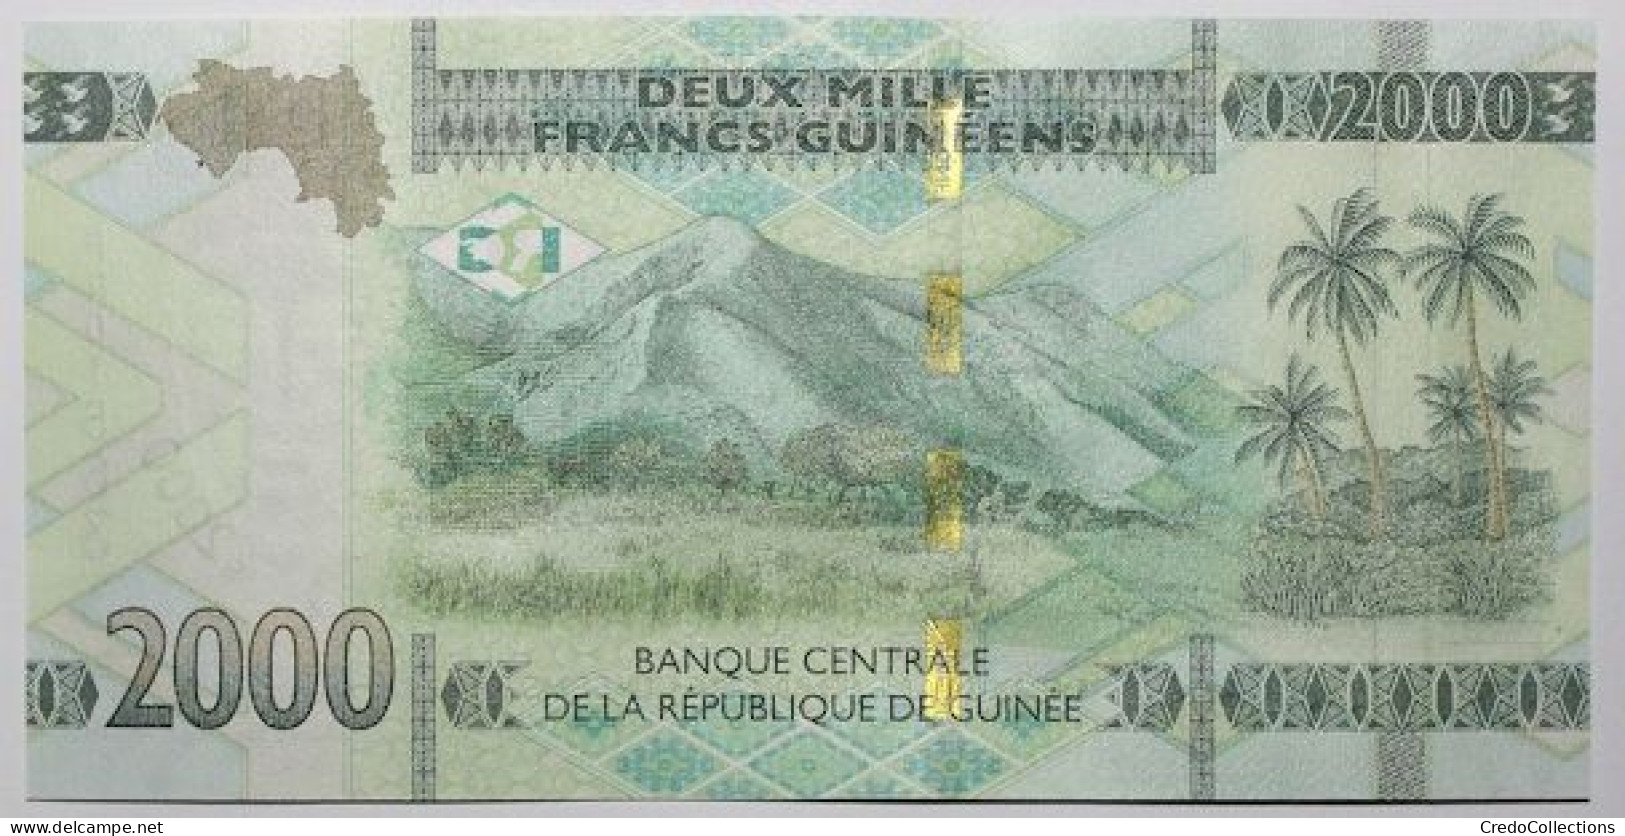 Guinée - 2000 Francs Guinéens - 2022 - PICK 48Ab - NEUF - Guinée